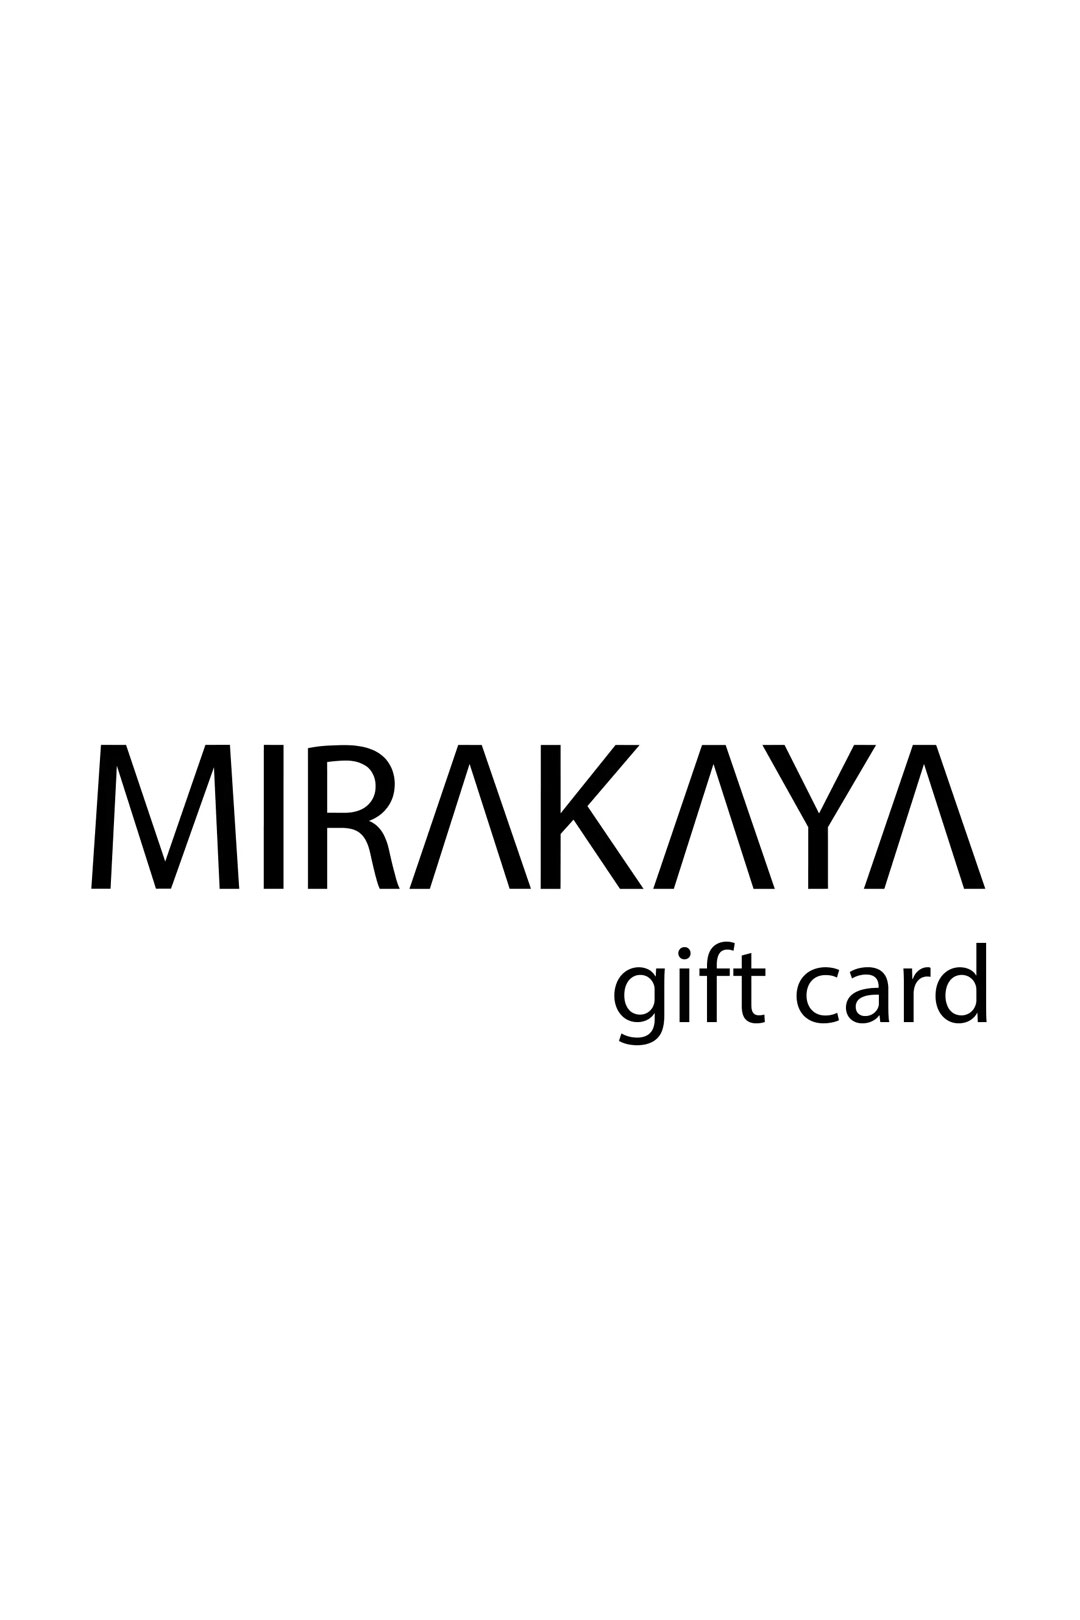 gift card mirakaya woman fashion